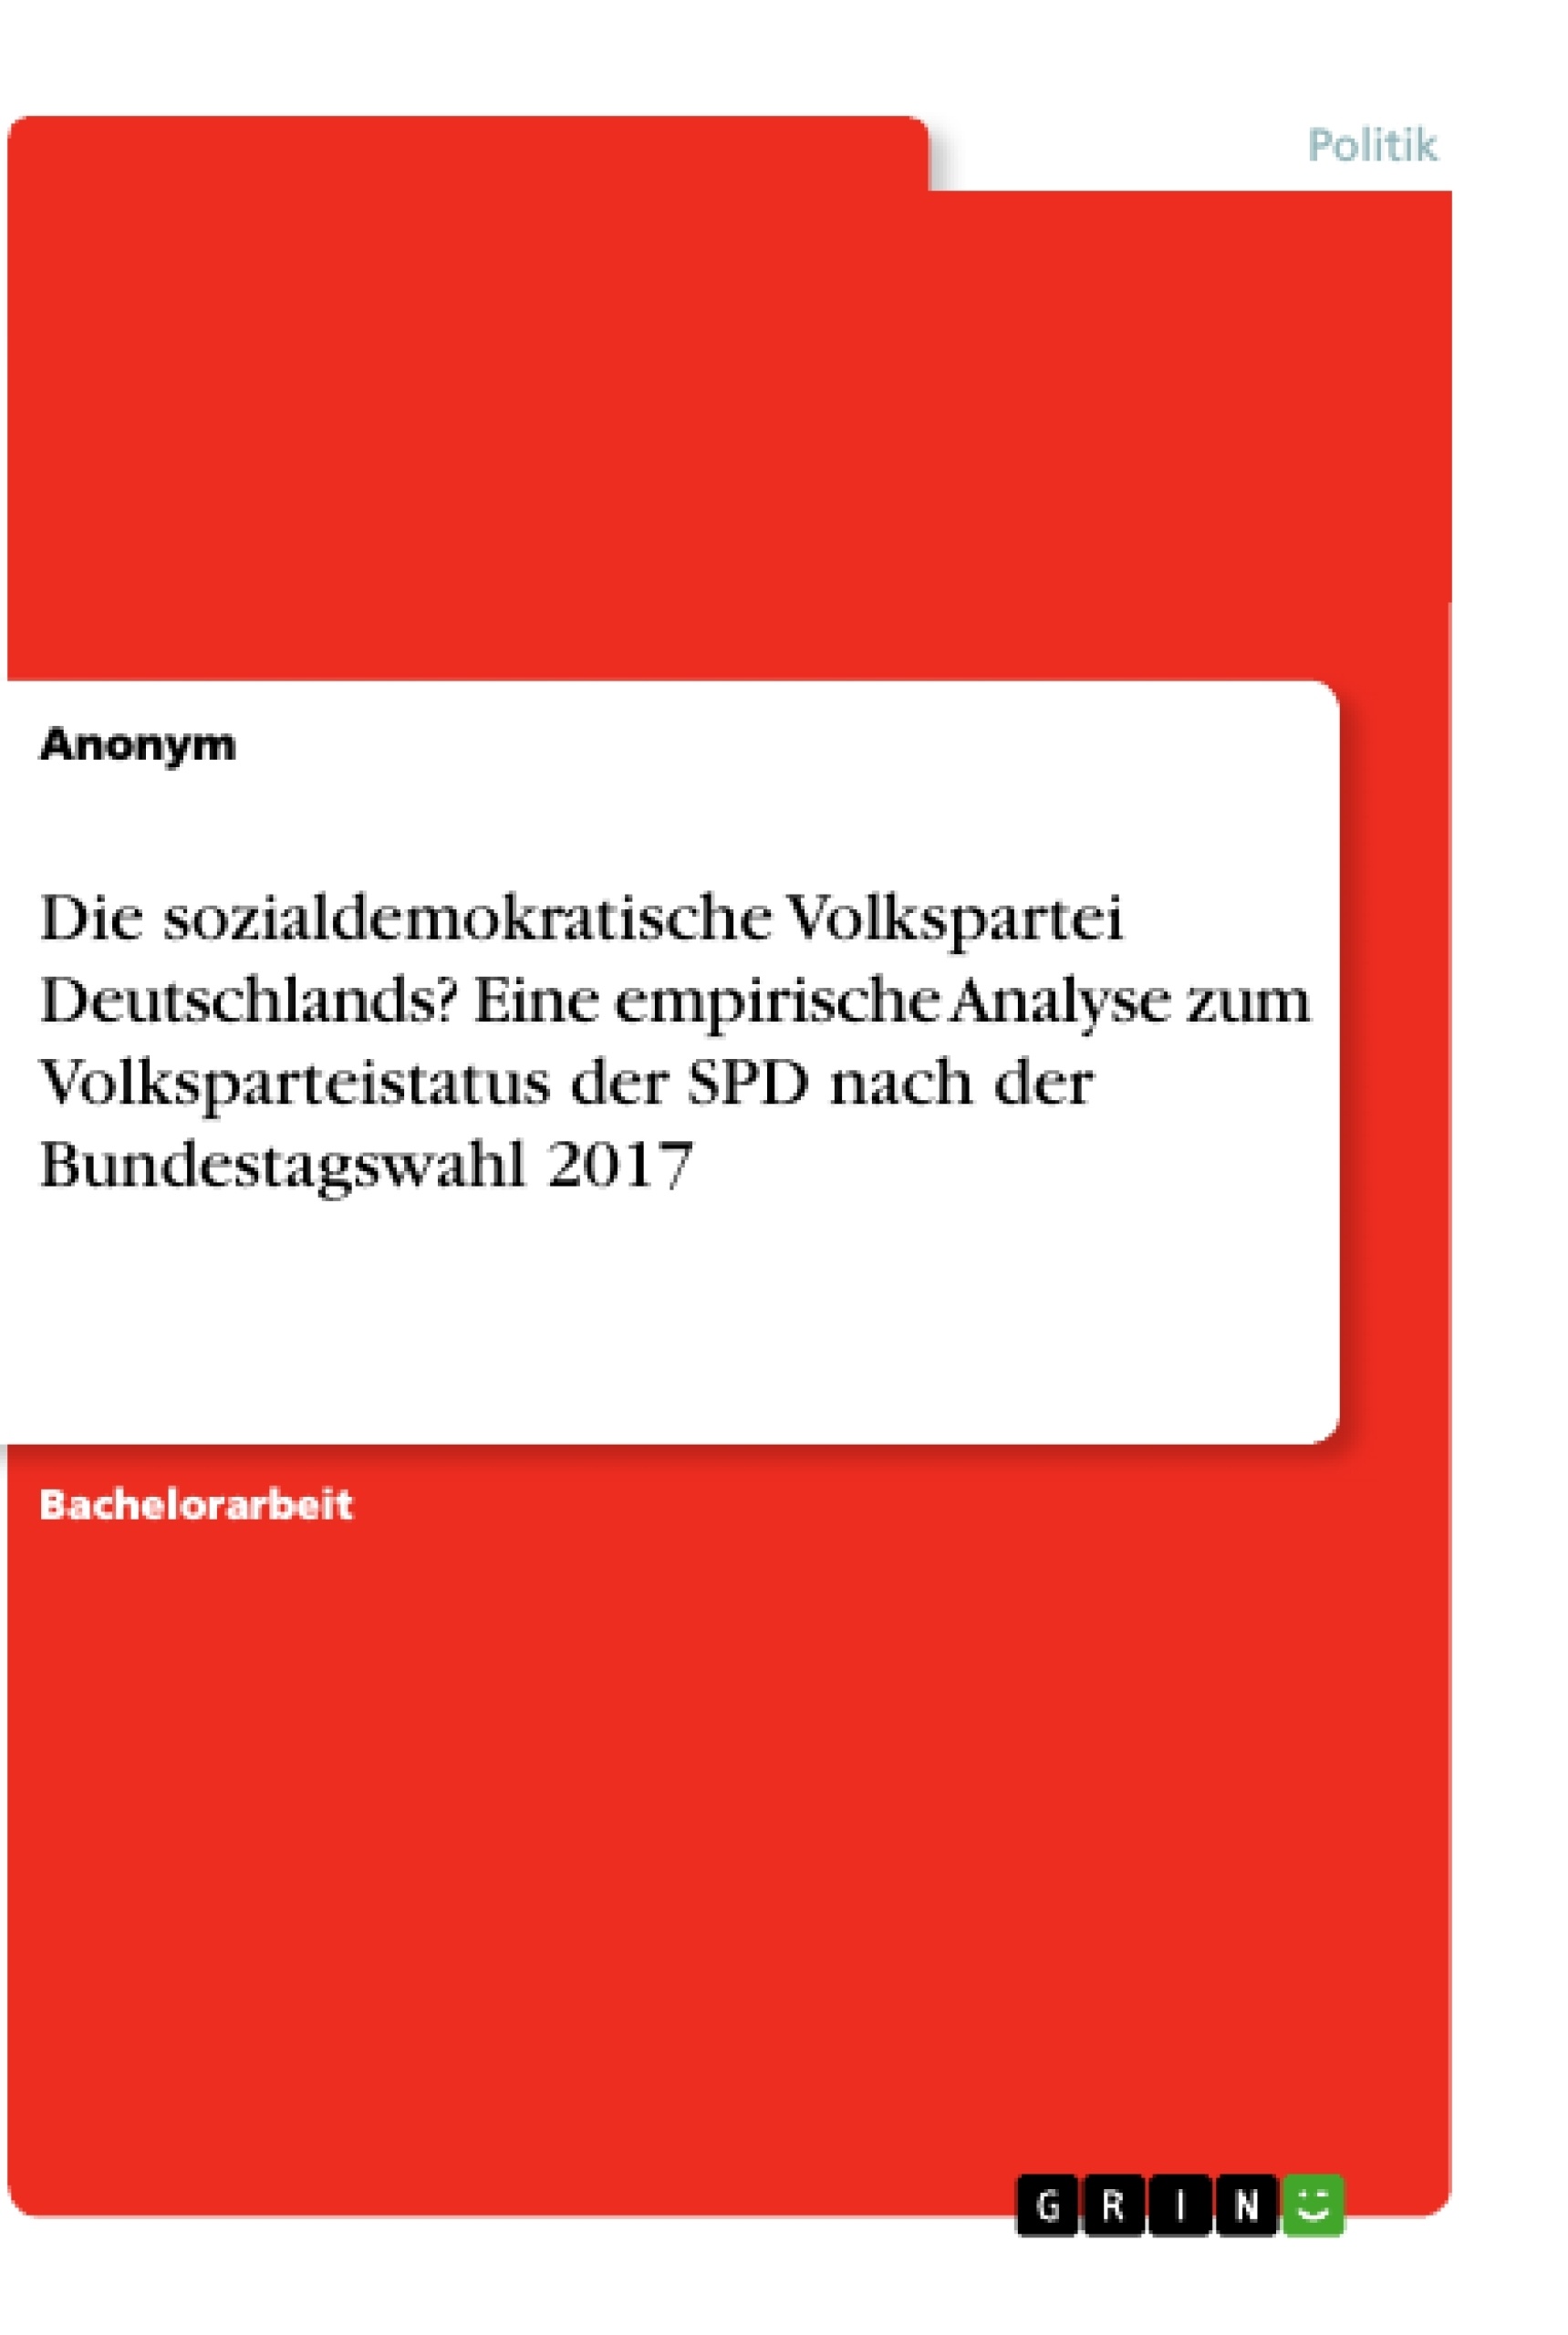 Título: Die sozialdemokratische Volkspartei Deutschlands? Eine empirische Analyse zum Volksparteistatus der SPD nach der Bundestagswahl 2017